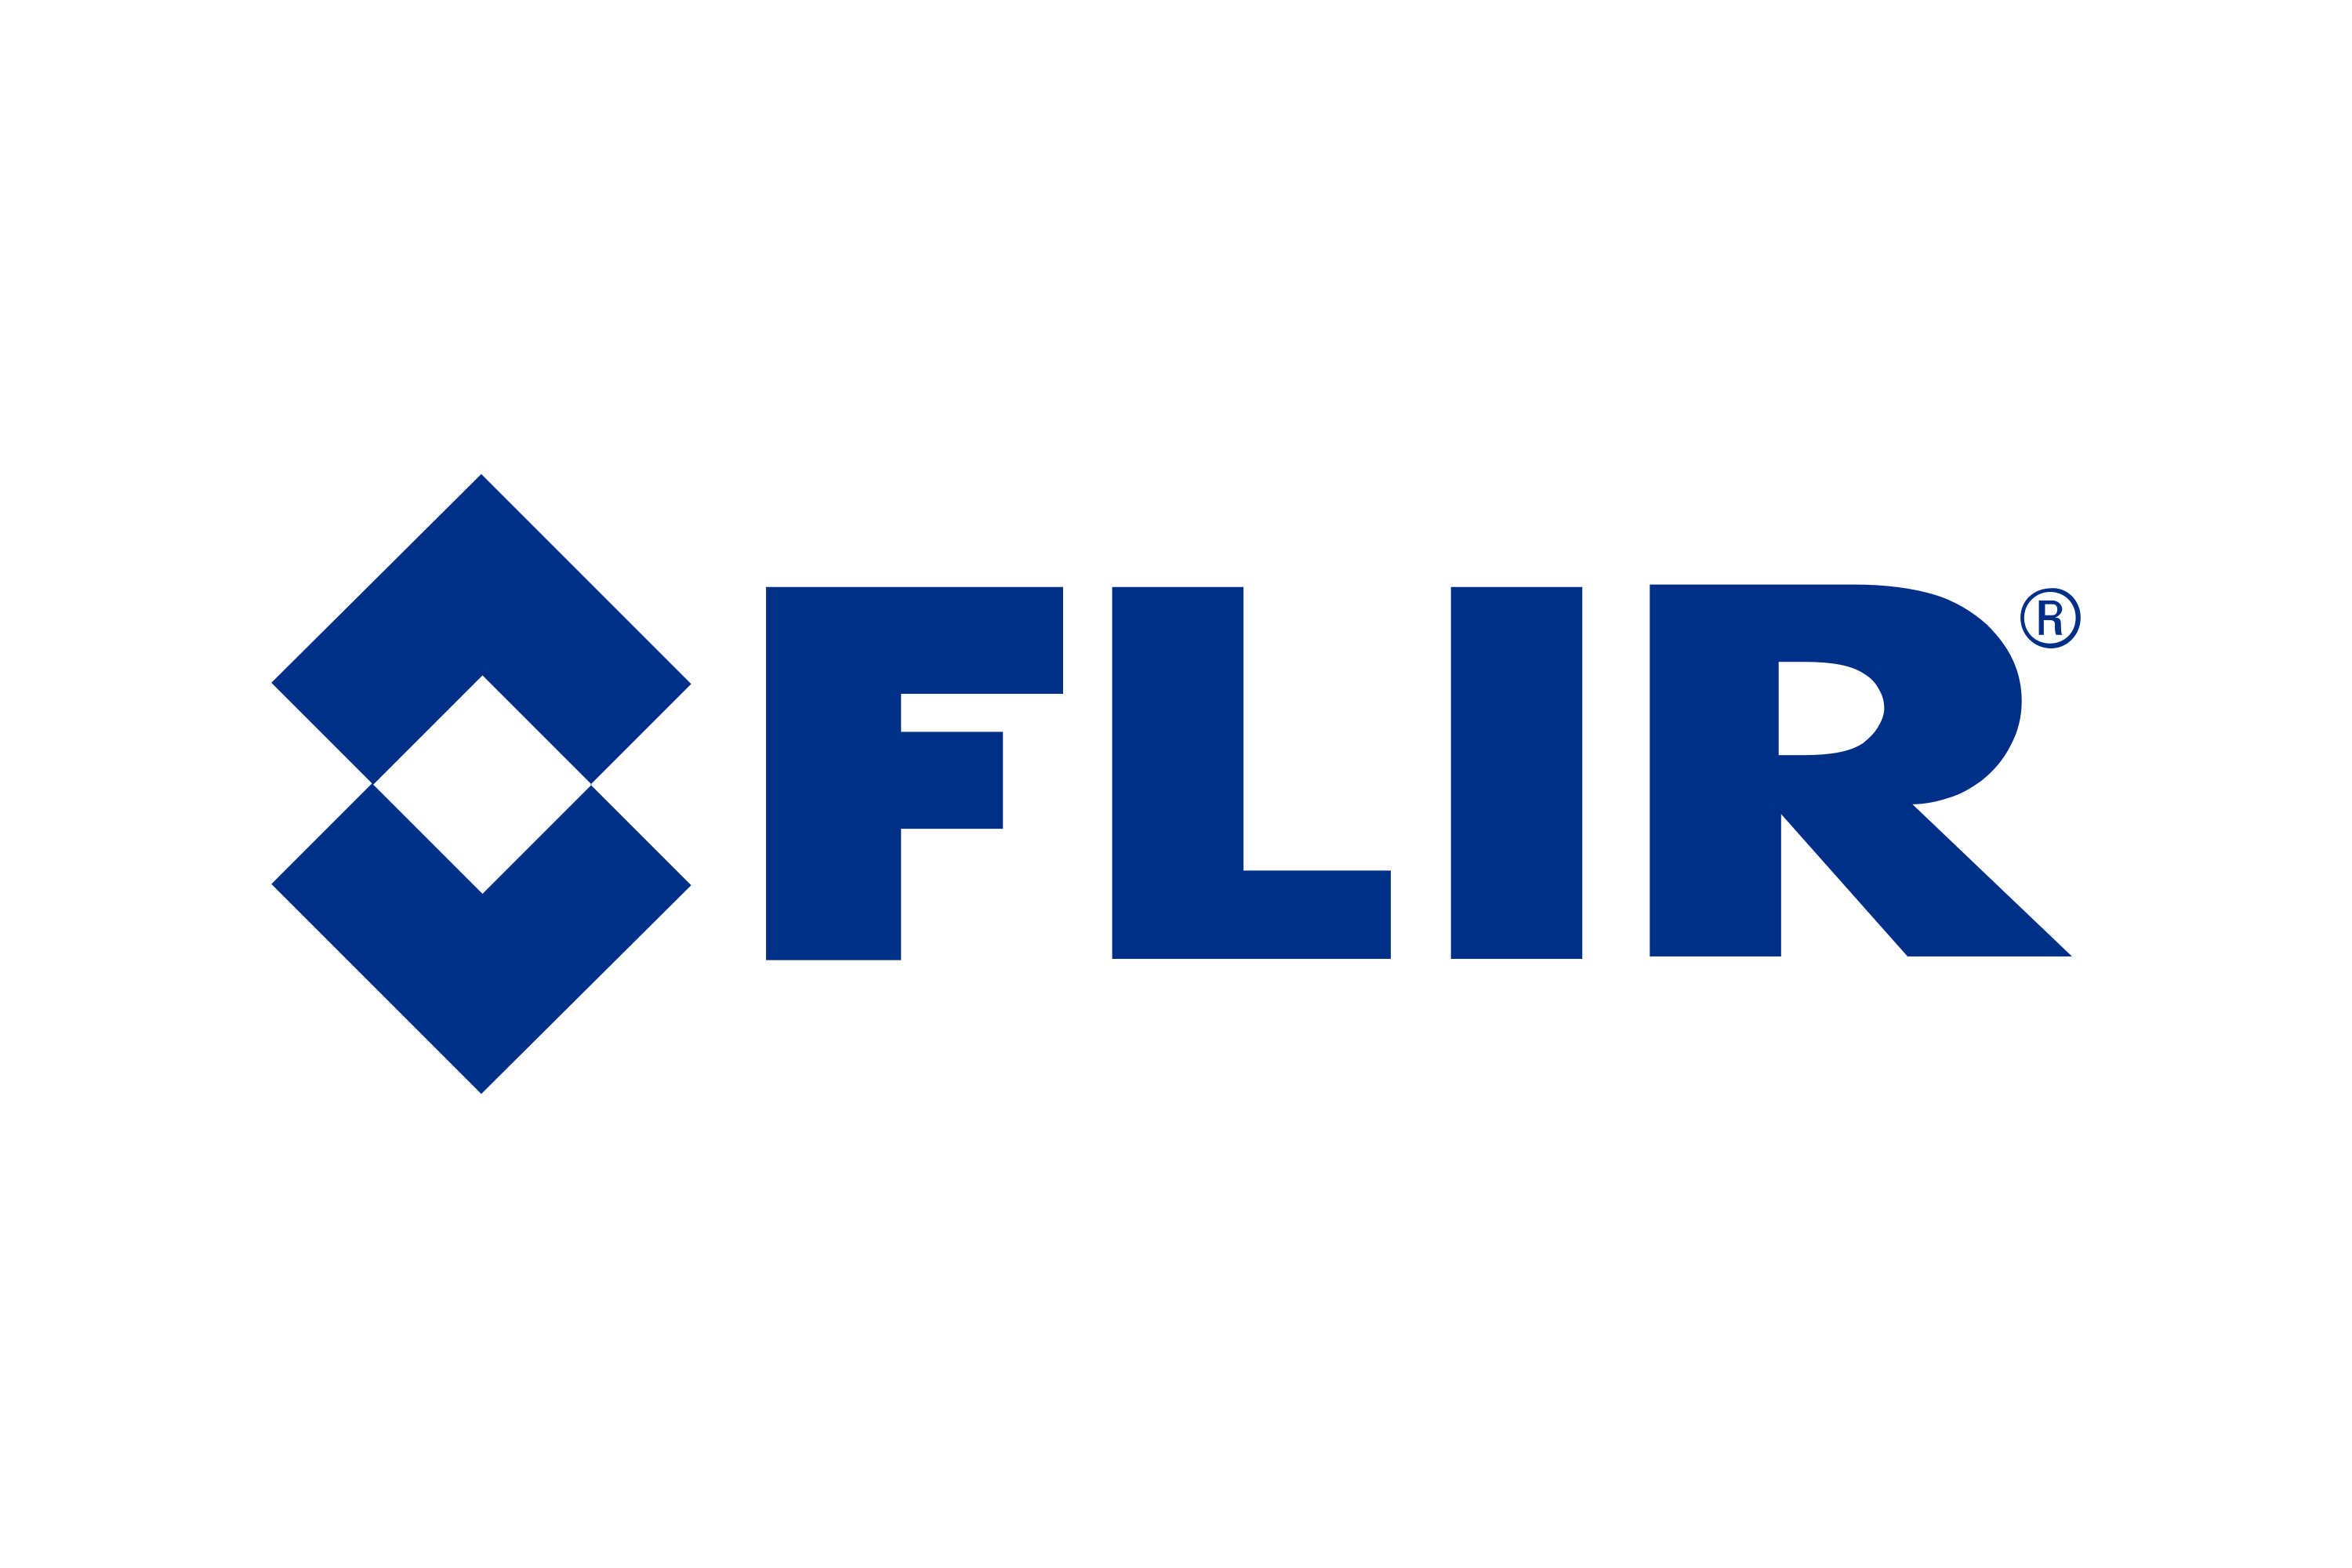 Download FLIR Systems Logo in SVG Vector or PNG File Format - Logo.wine